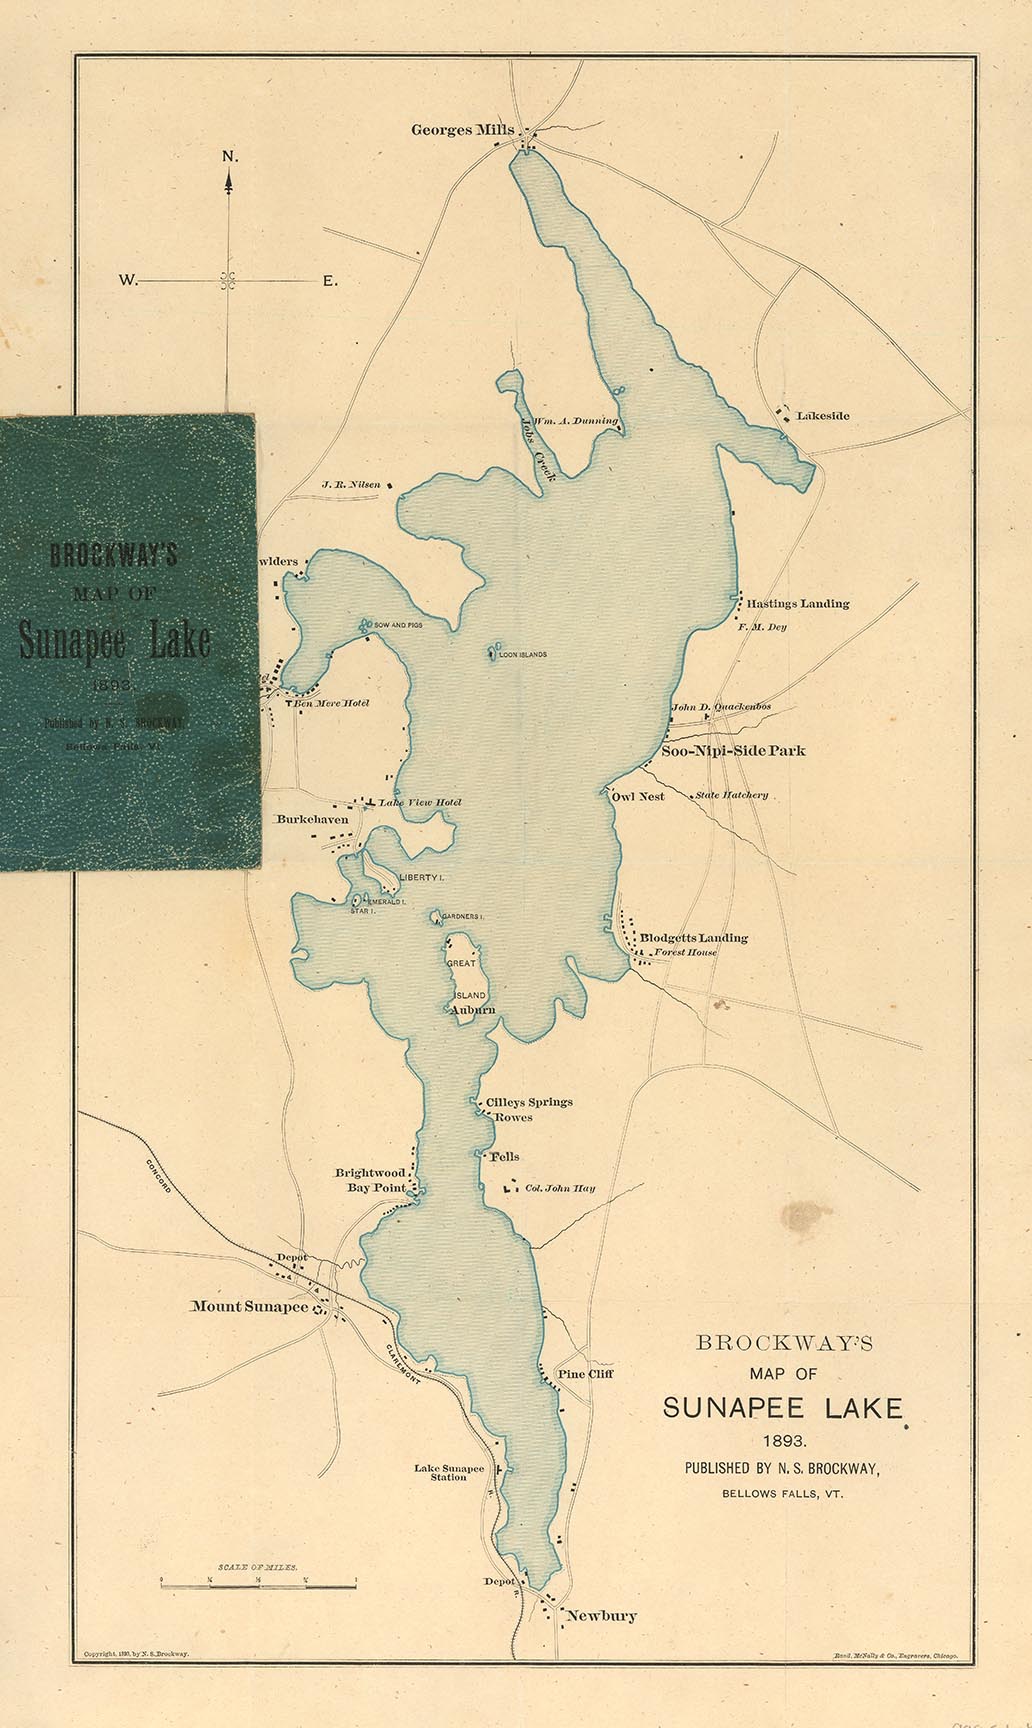 Brockway's map of Sunapee Lake, 1893.